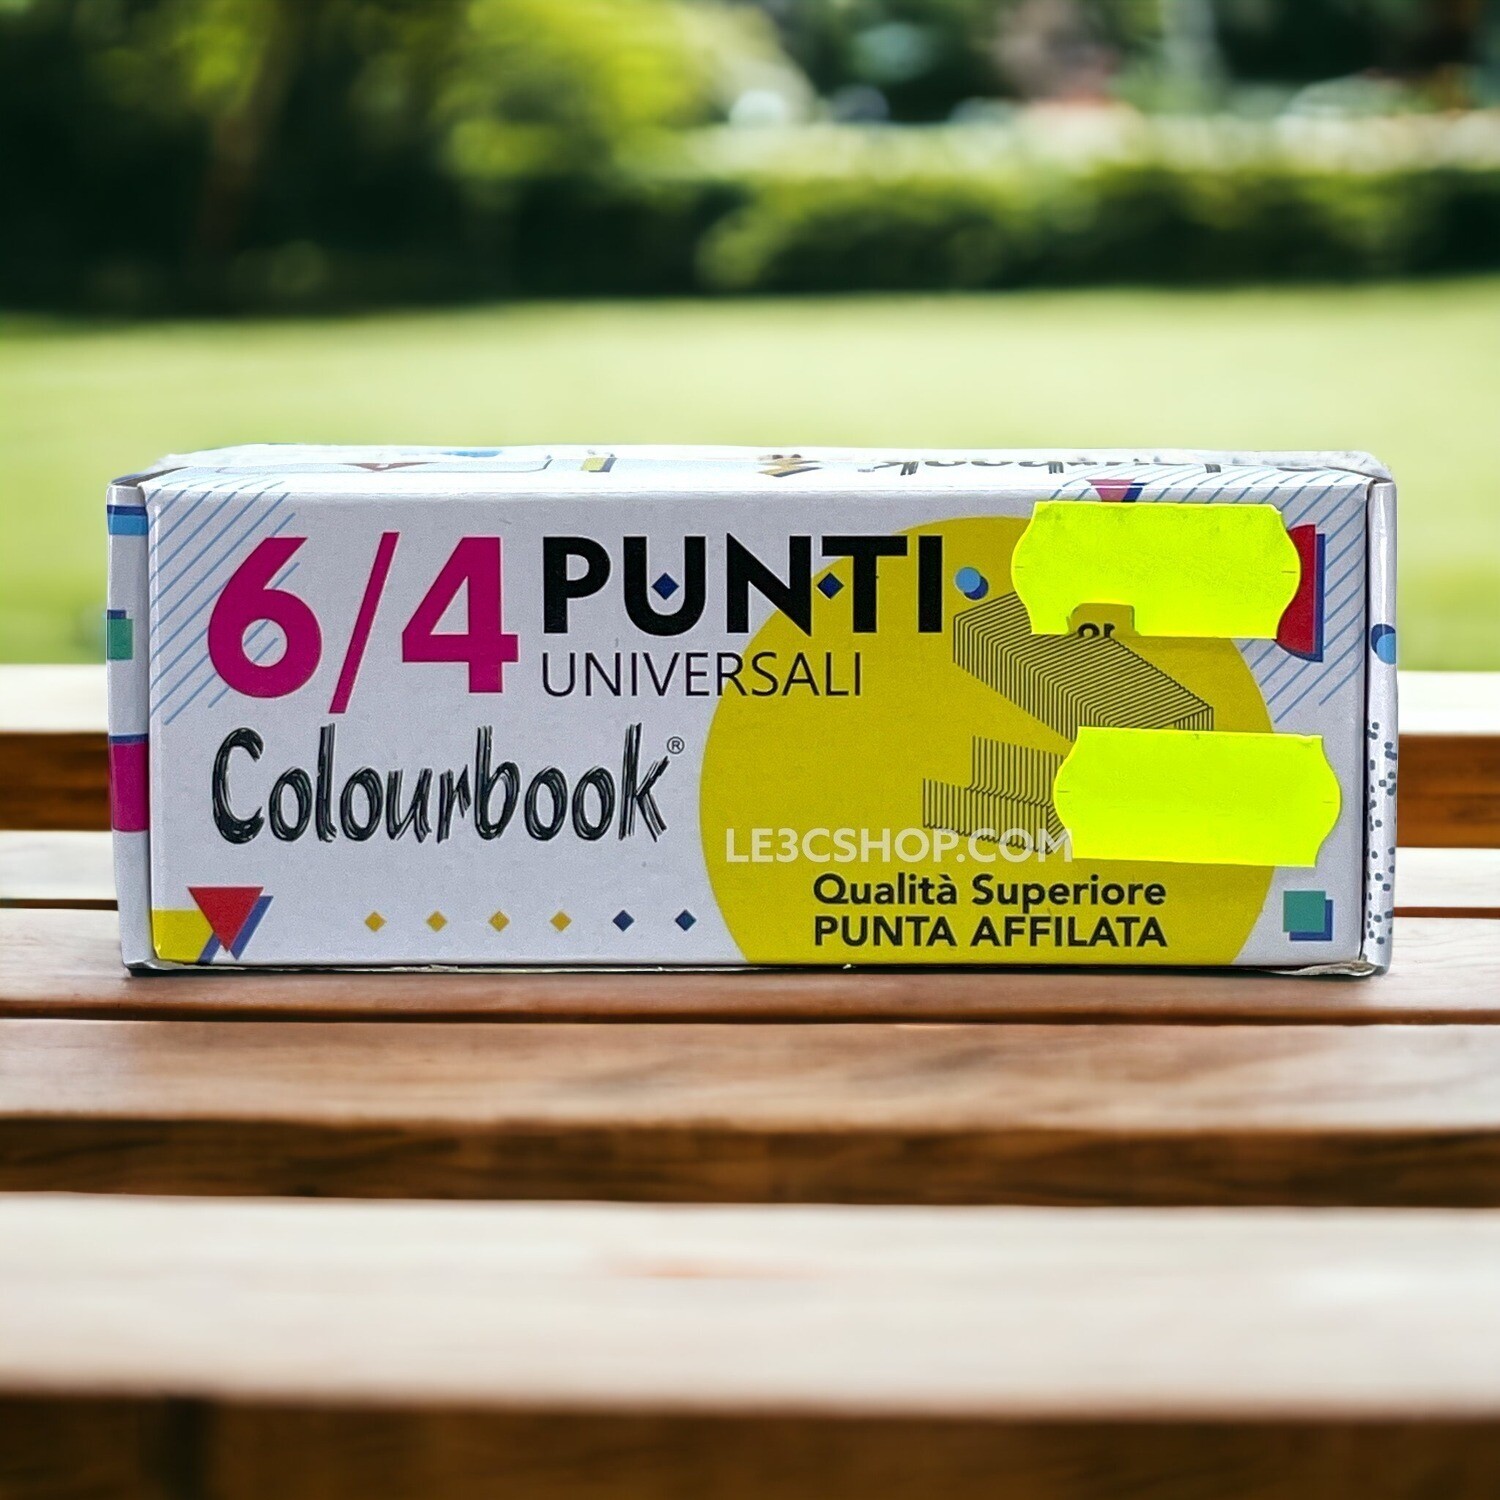 Colourbook Punti Metallici - Passo 6mm, Confezione da 10 per Rilegare Documenti.